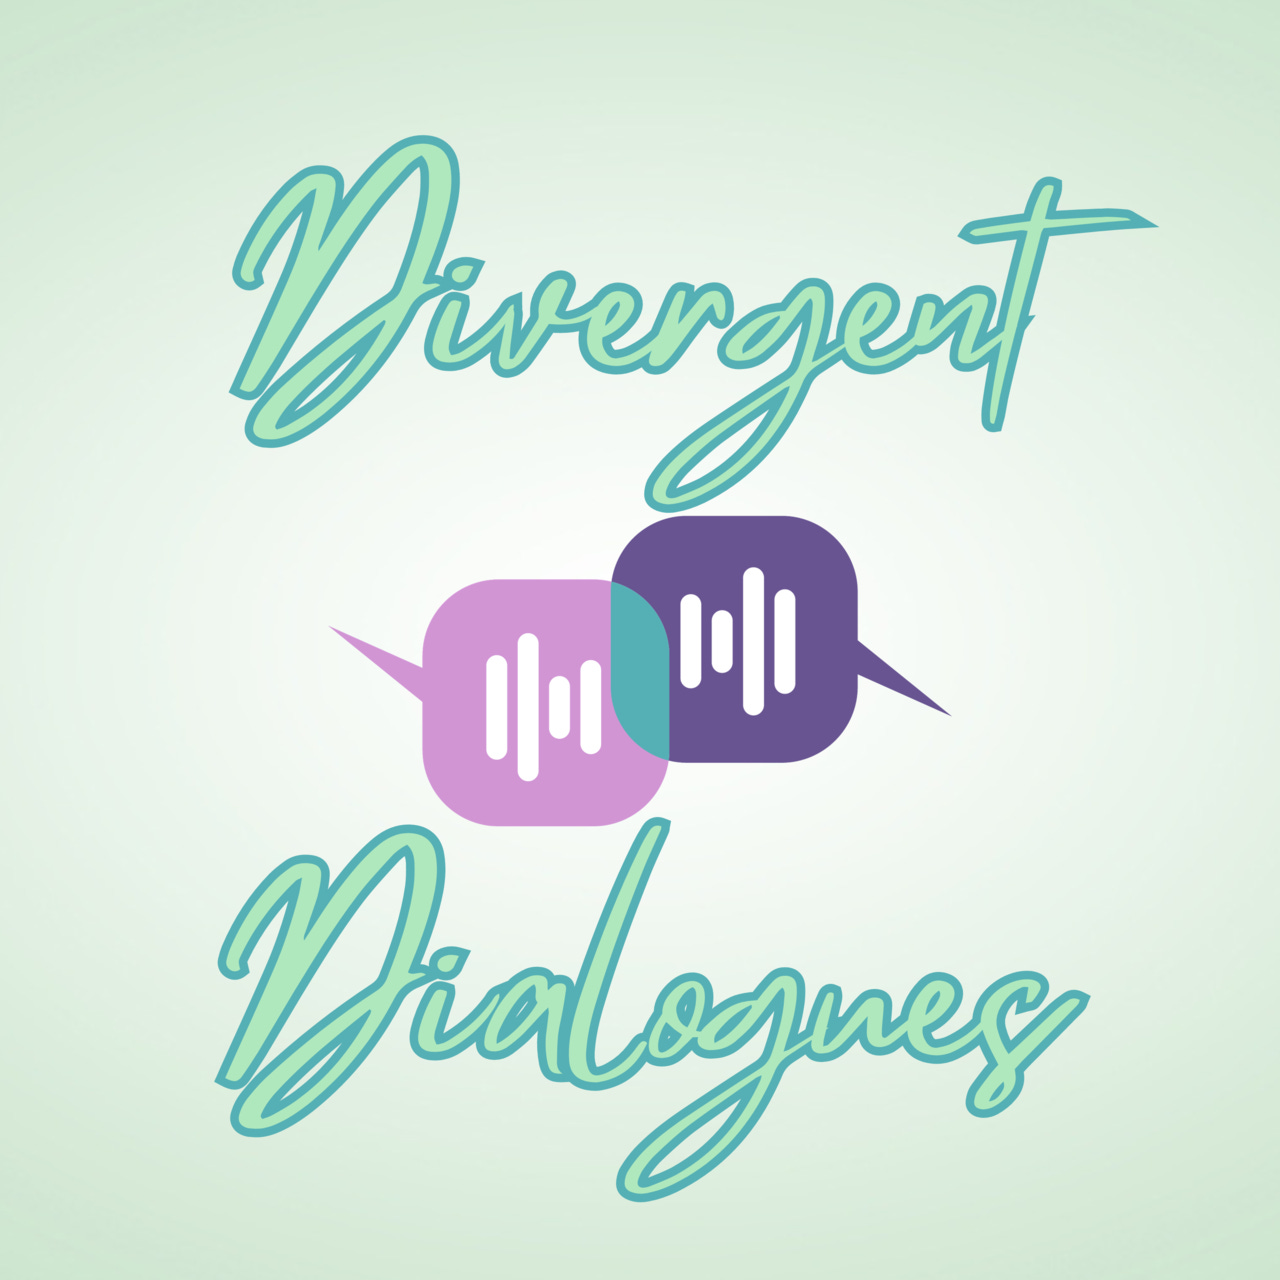 Divergent Dialogues